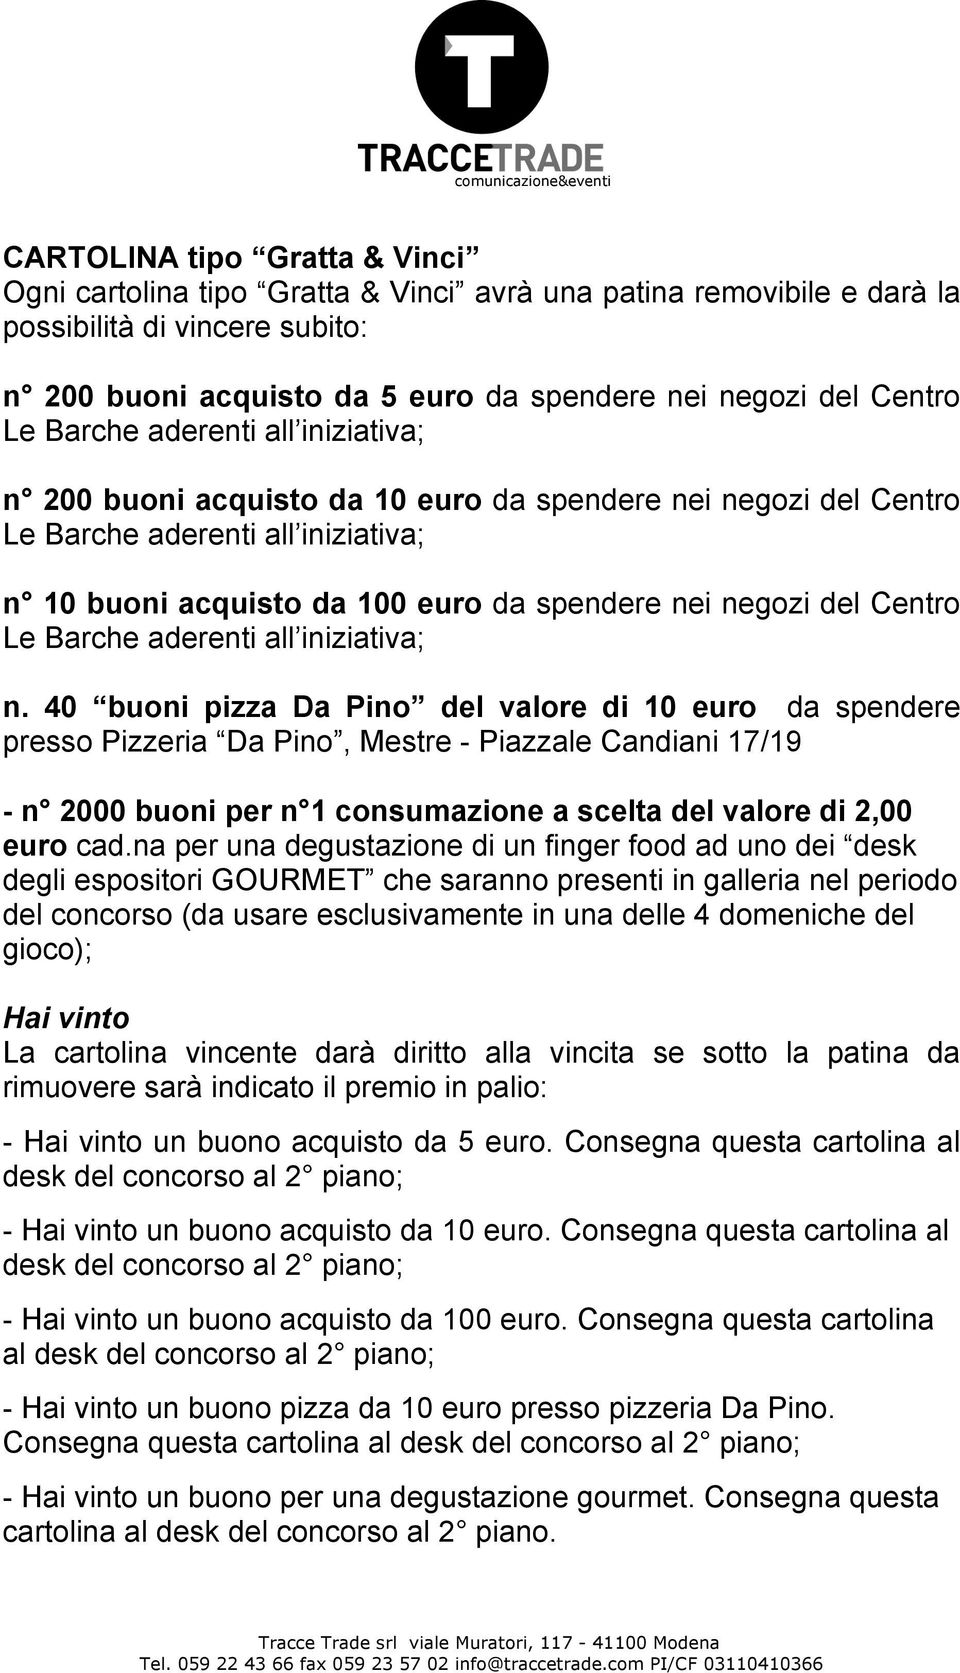 40 buoni pizza Da Pino del valore di 10 euro da spendere presso Pizzeria Da Pino, Mestre - Piazzale Candiani 17/19 - n 2000 buoni per n 1 consumazione a scelta del valore di 2,00 euro cad.